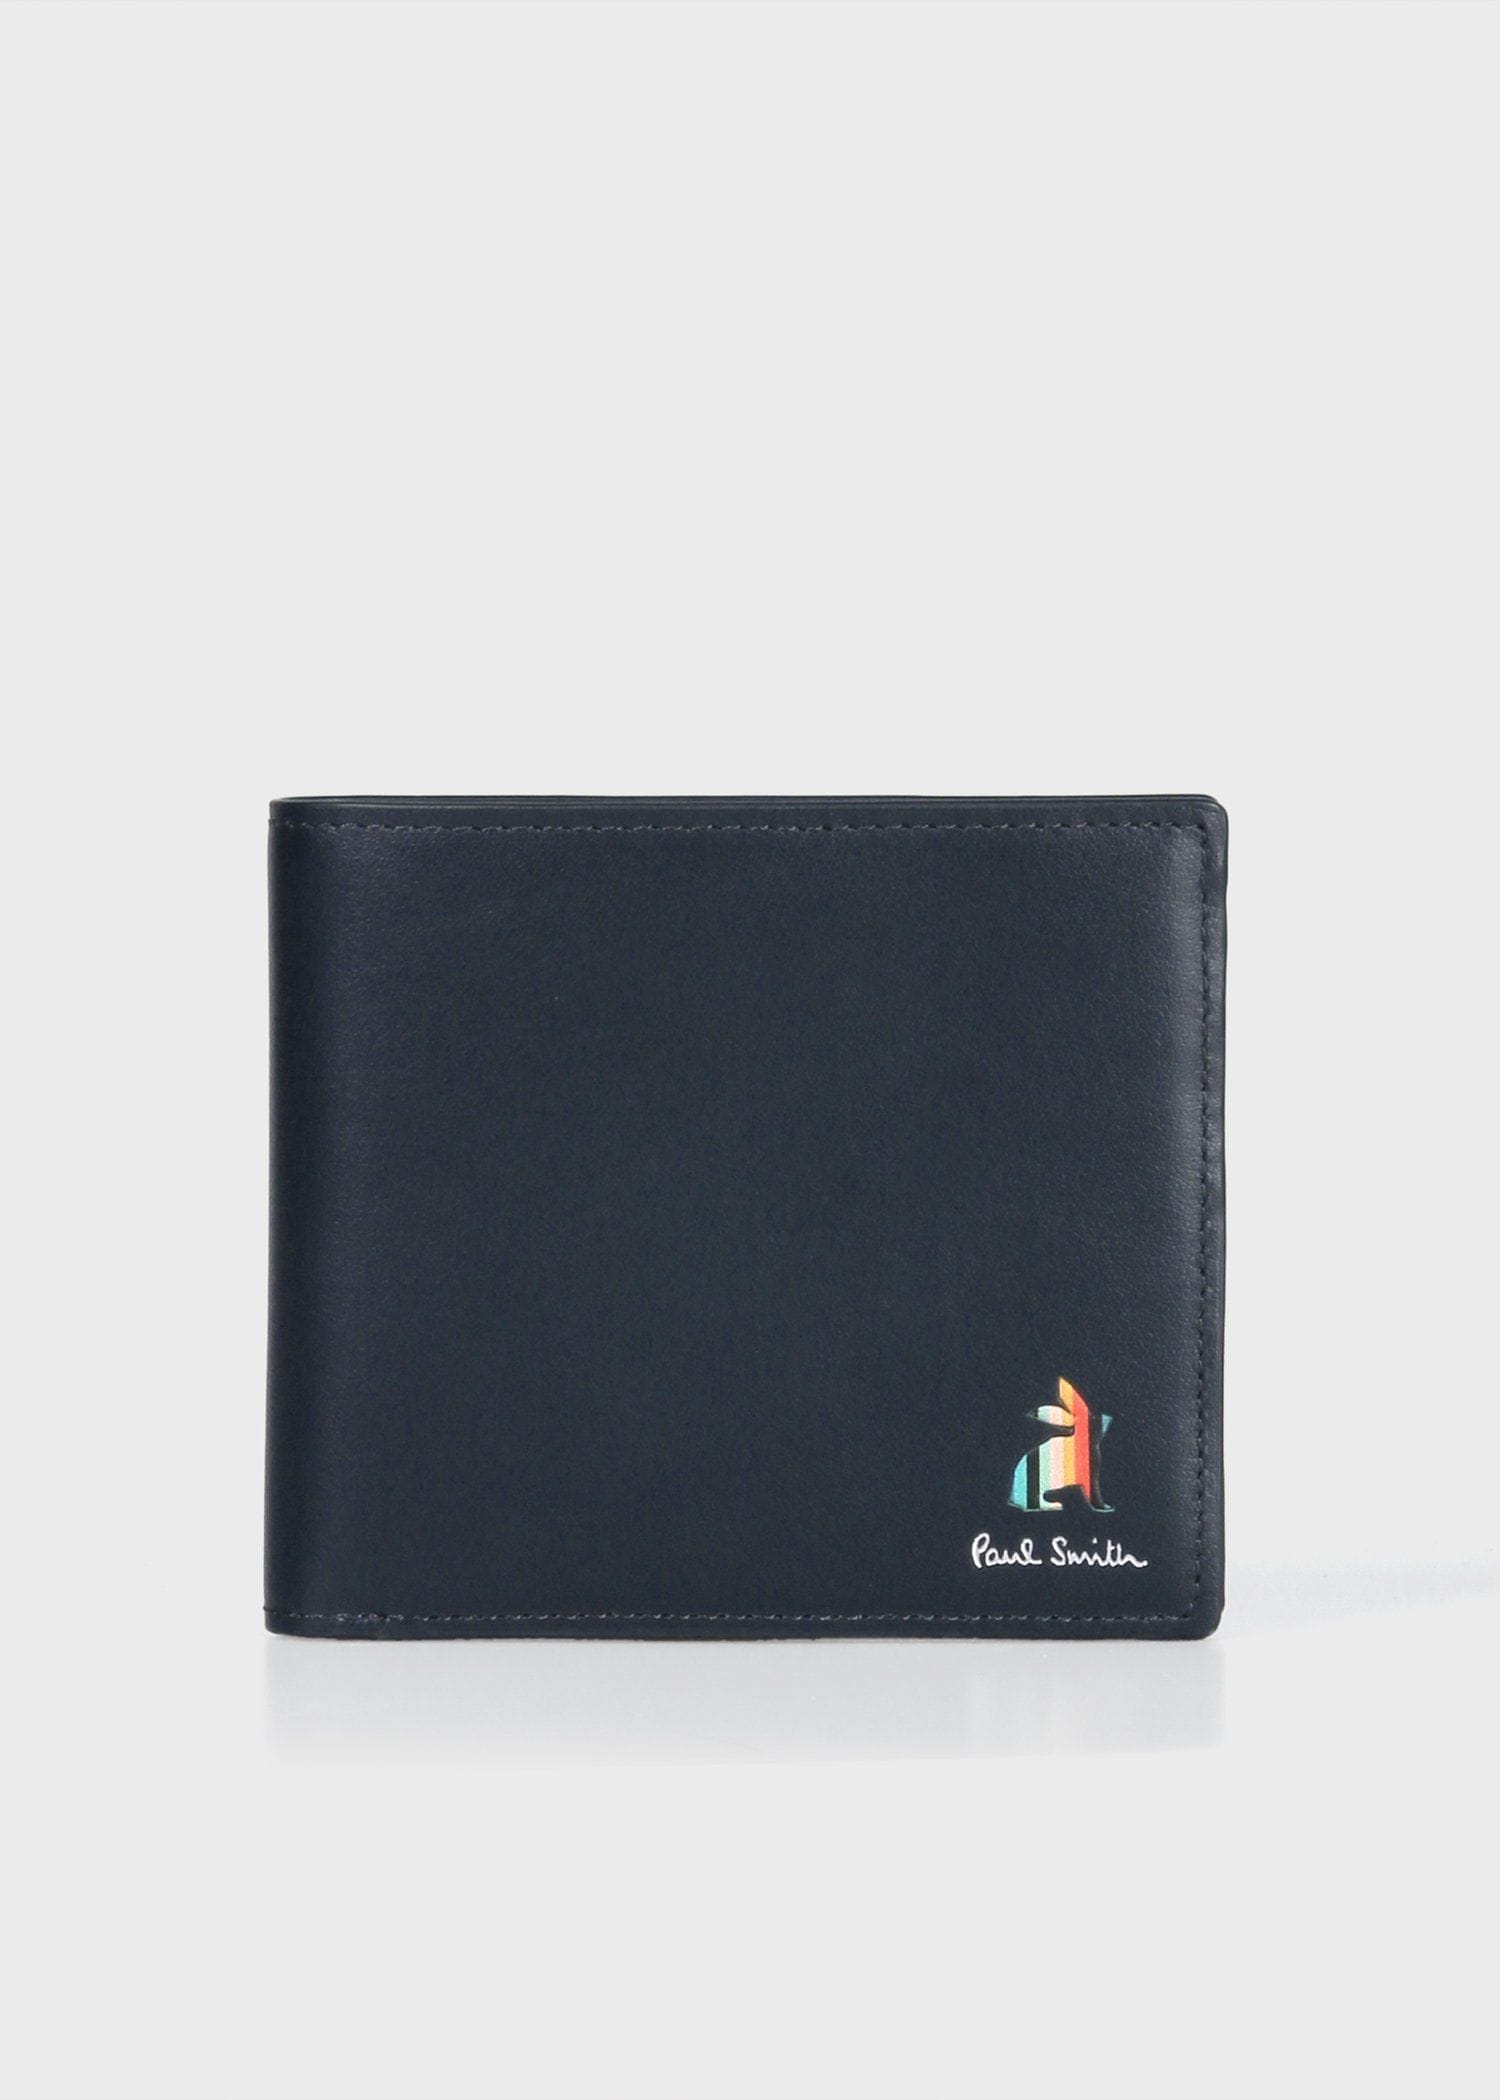 新品未使用 ポールスミス アーティストストライプ 折り財布 イタリア製